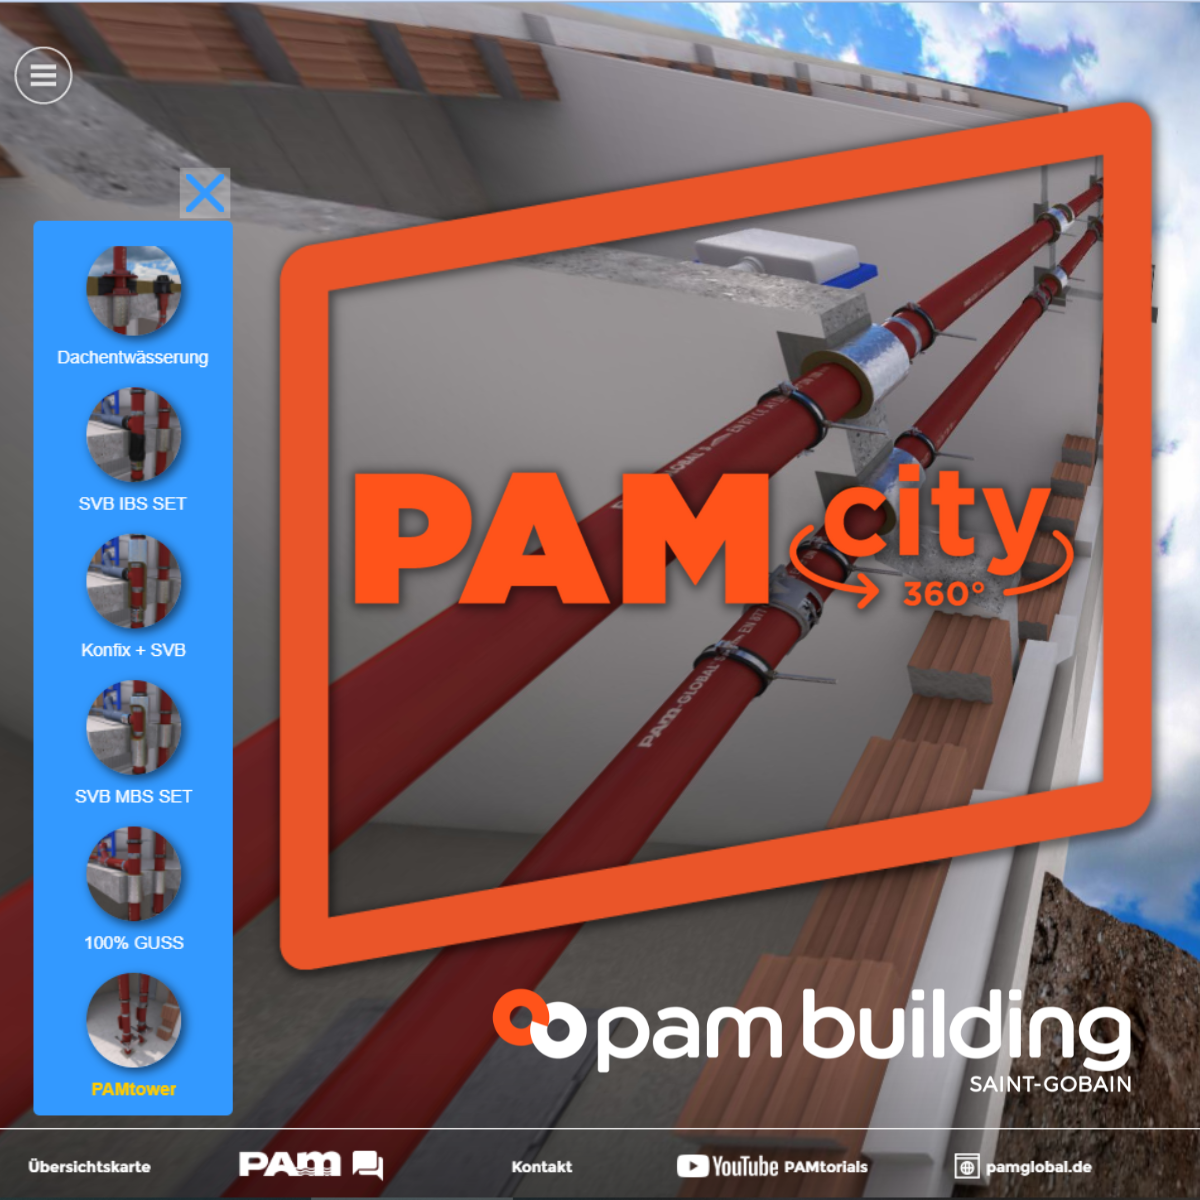 Besuchen Sie PAMcity mit Ihrem Smartphone, Tablet oder Notebook